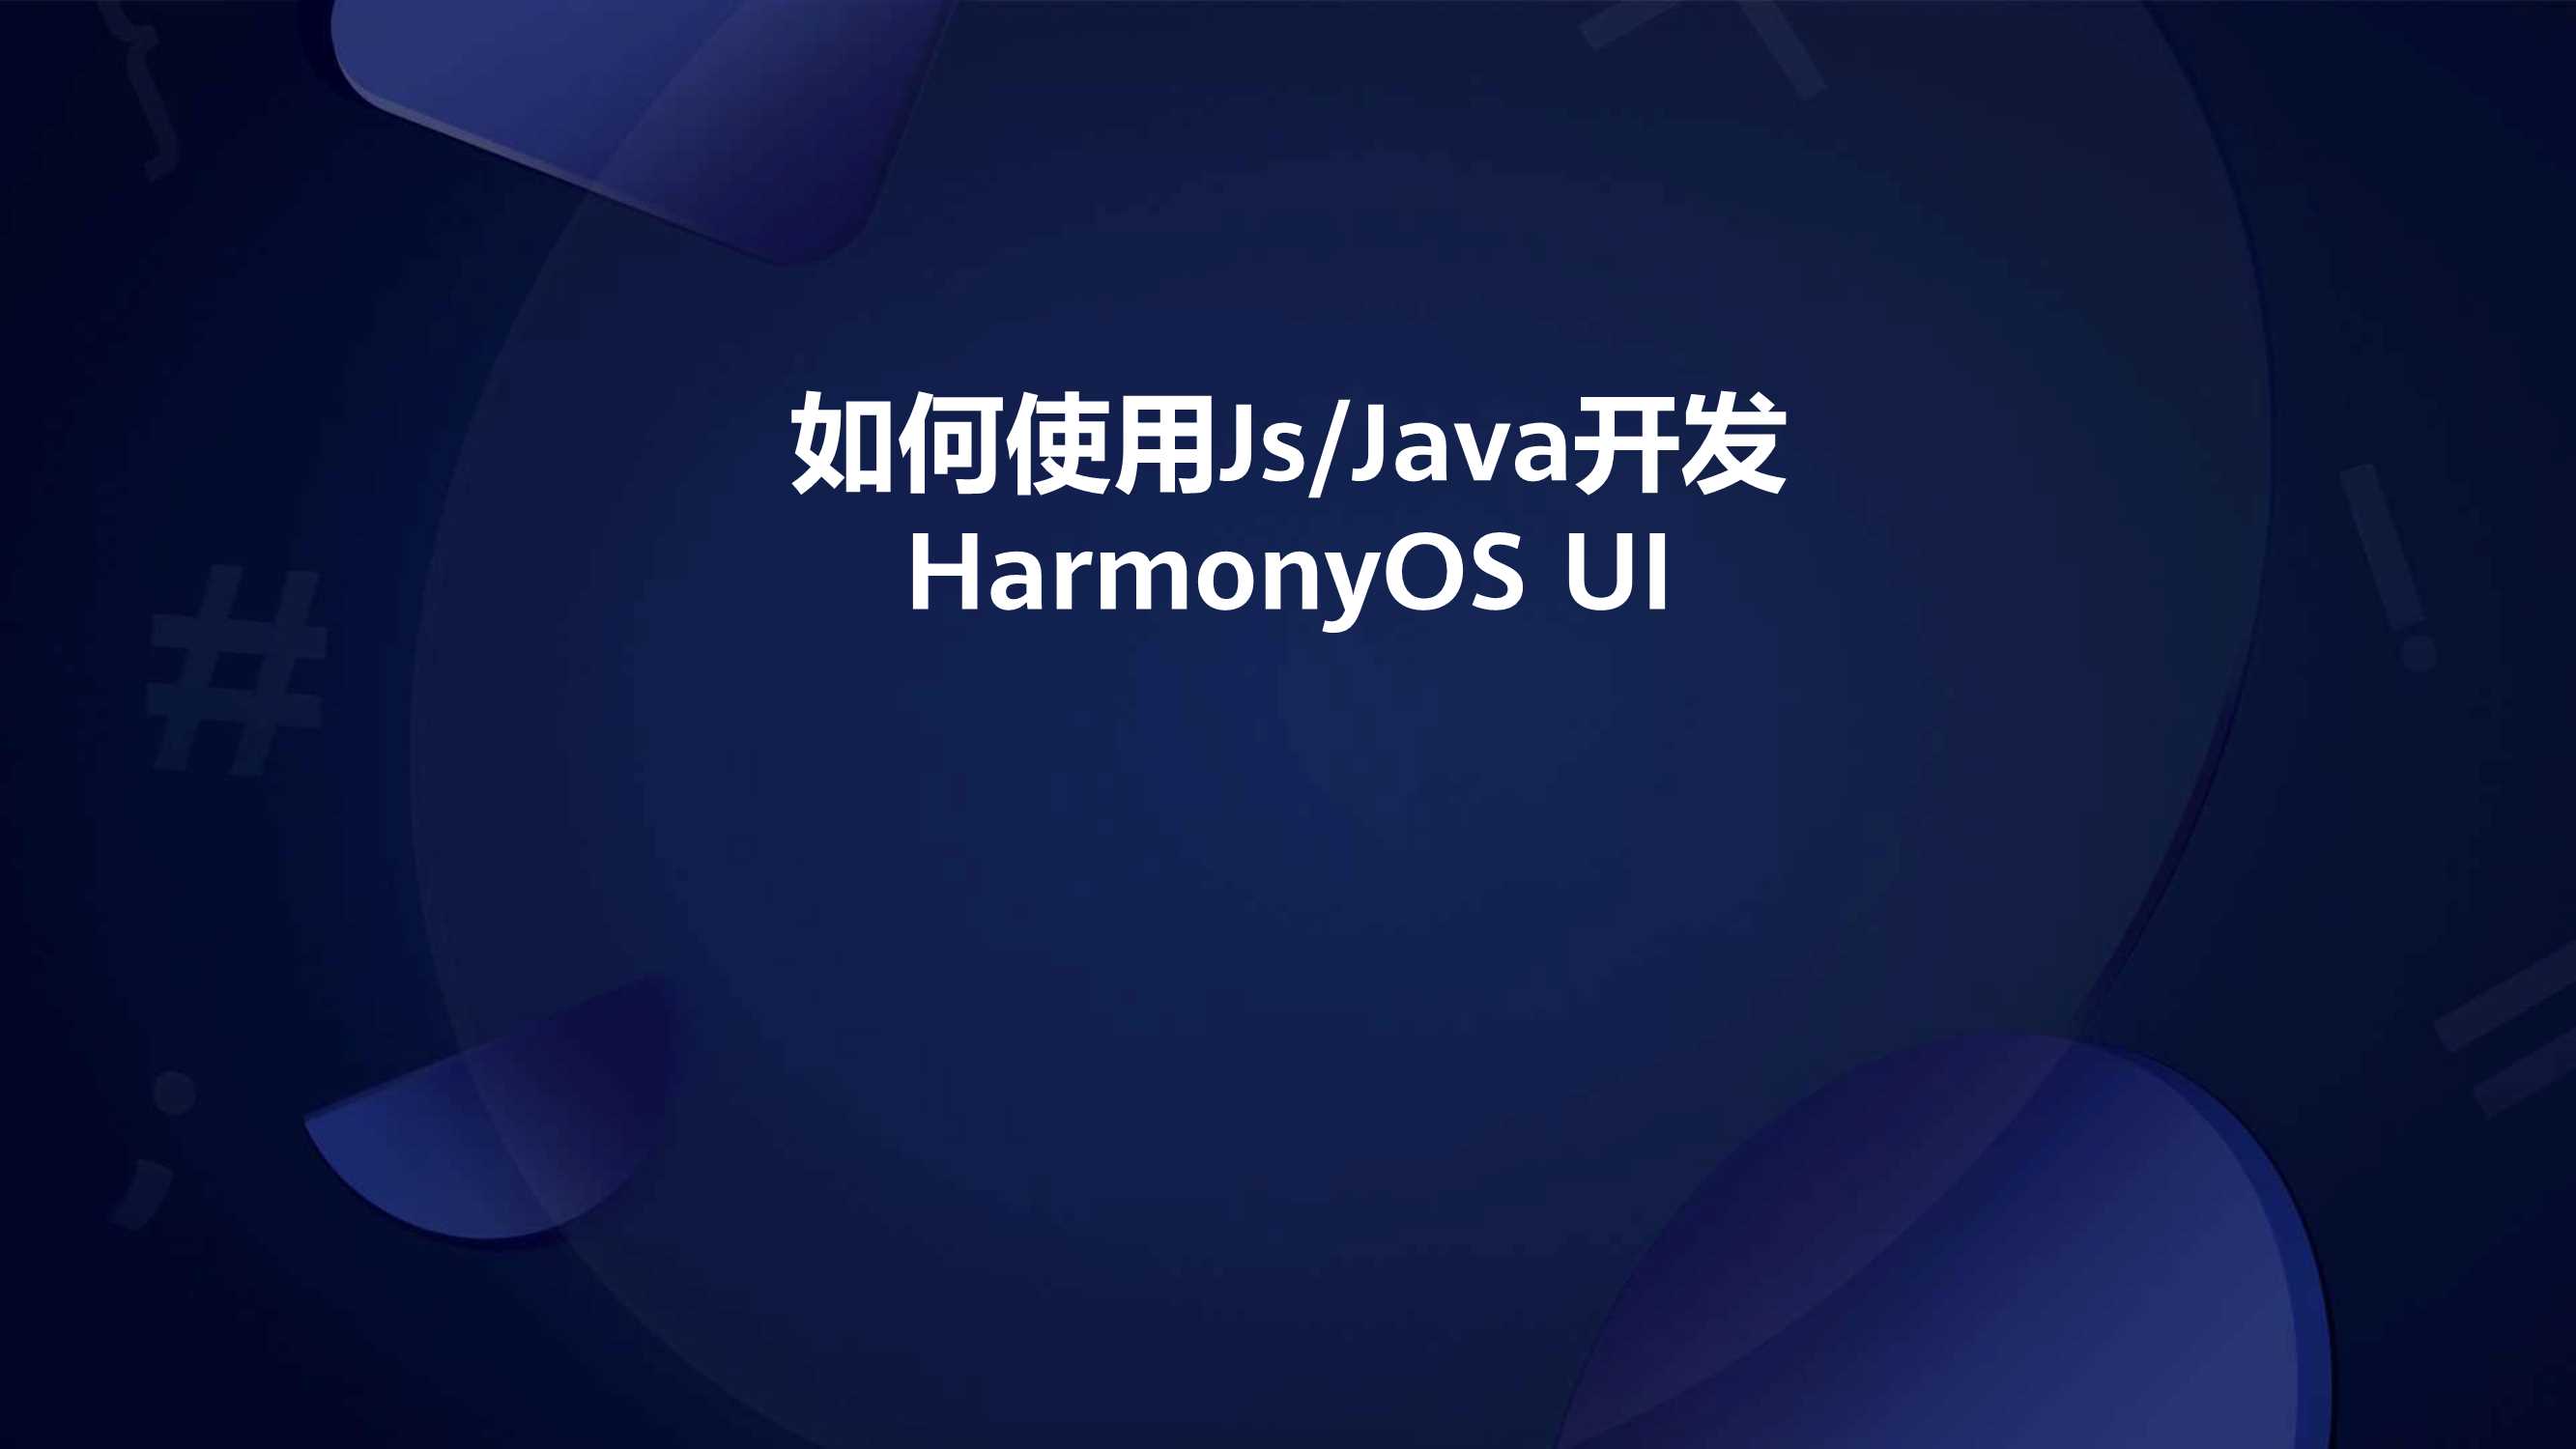 如何使用JsJava开发HarmonyOS UI-24页